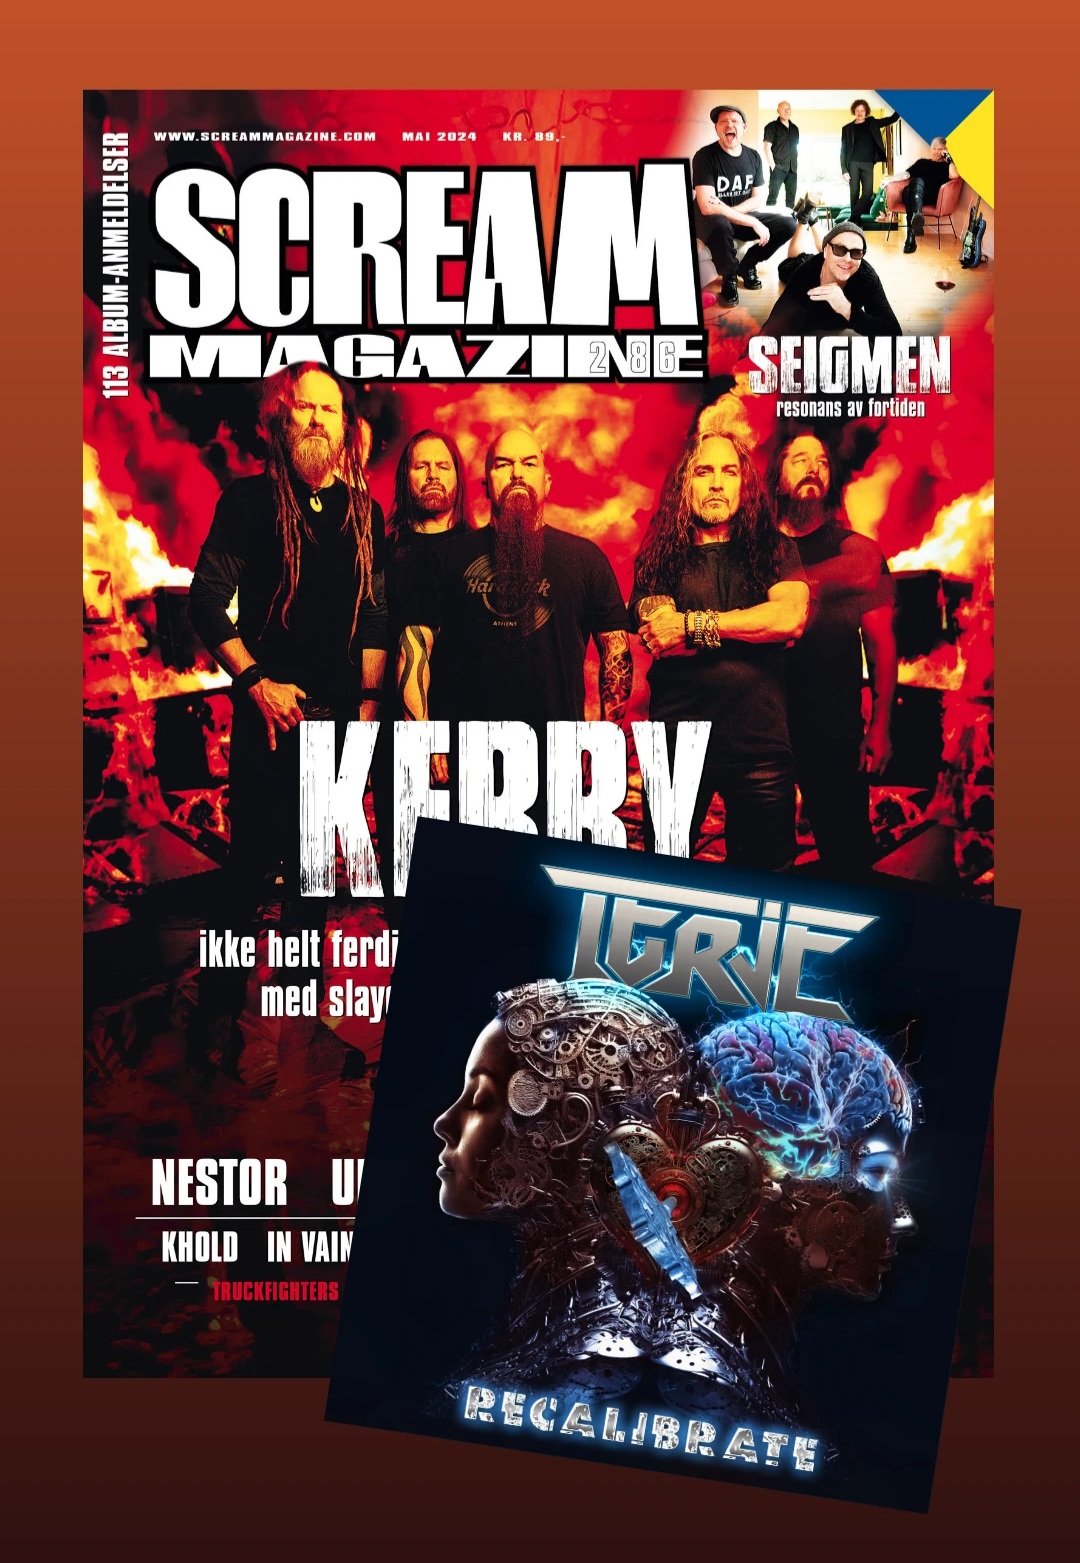 Terje review of Recairate in Scream Magazine no.286